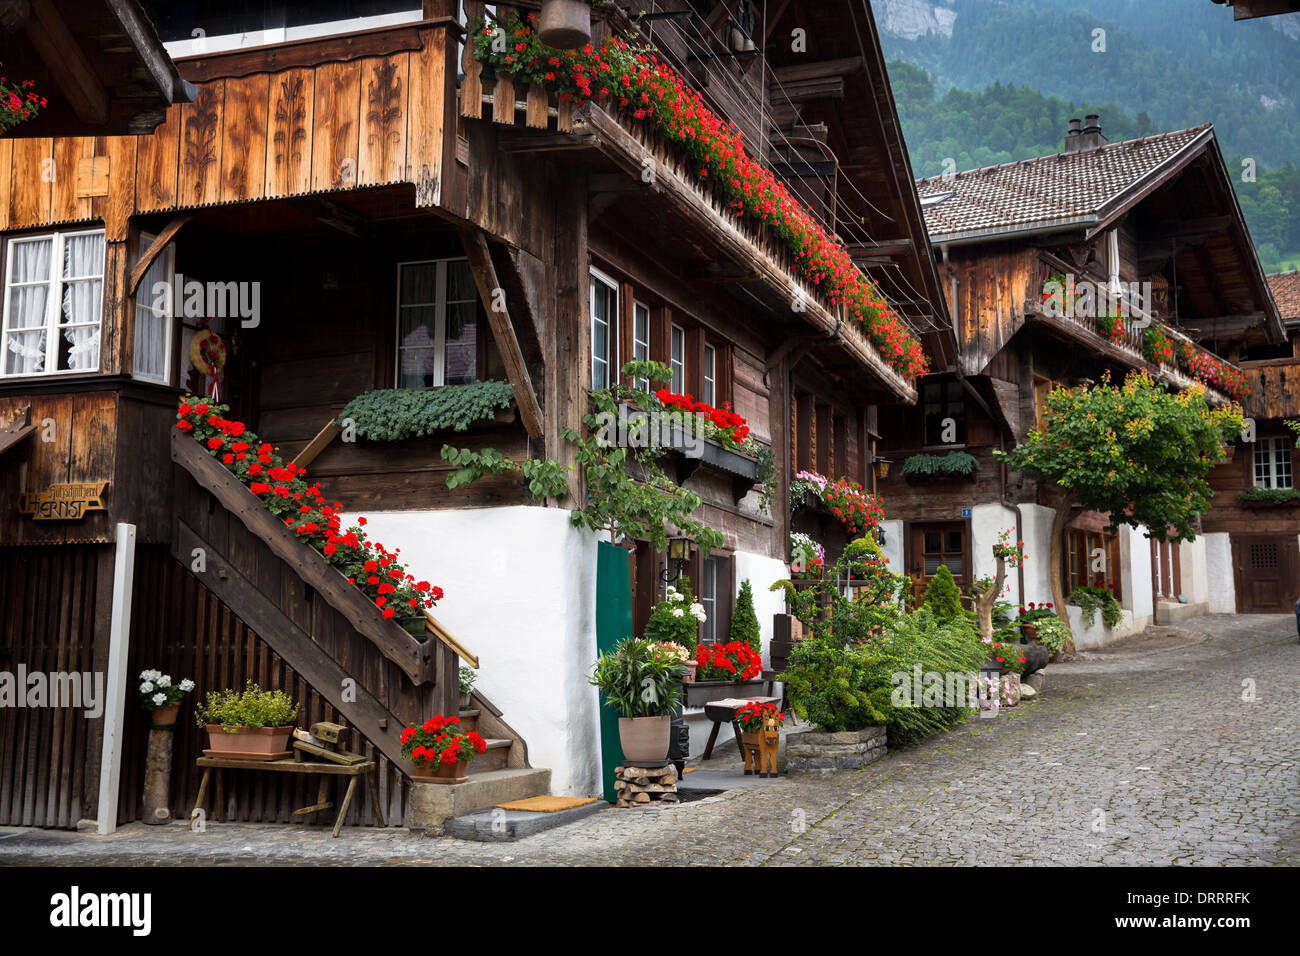 Favorito de los turistas Brunngasse calle adoquinada con arquitectura del siglo XVIII, de Brienz en el Oberland bernés en Suiza Foto de stock